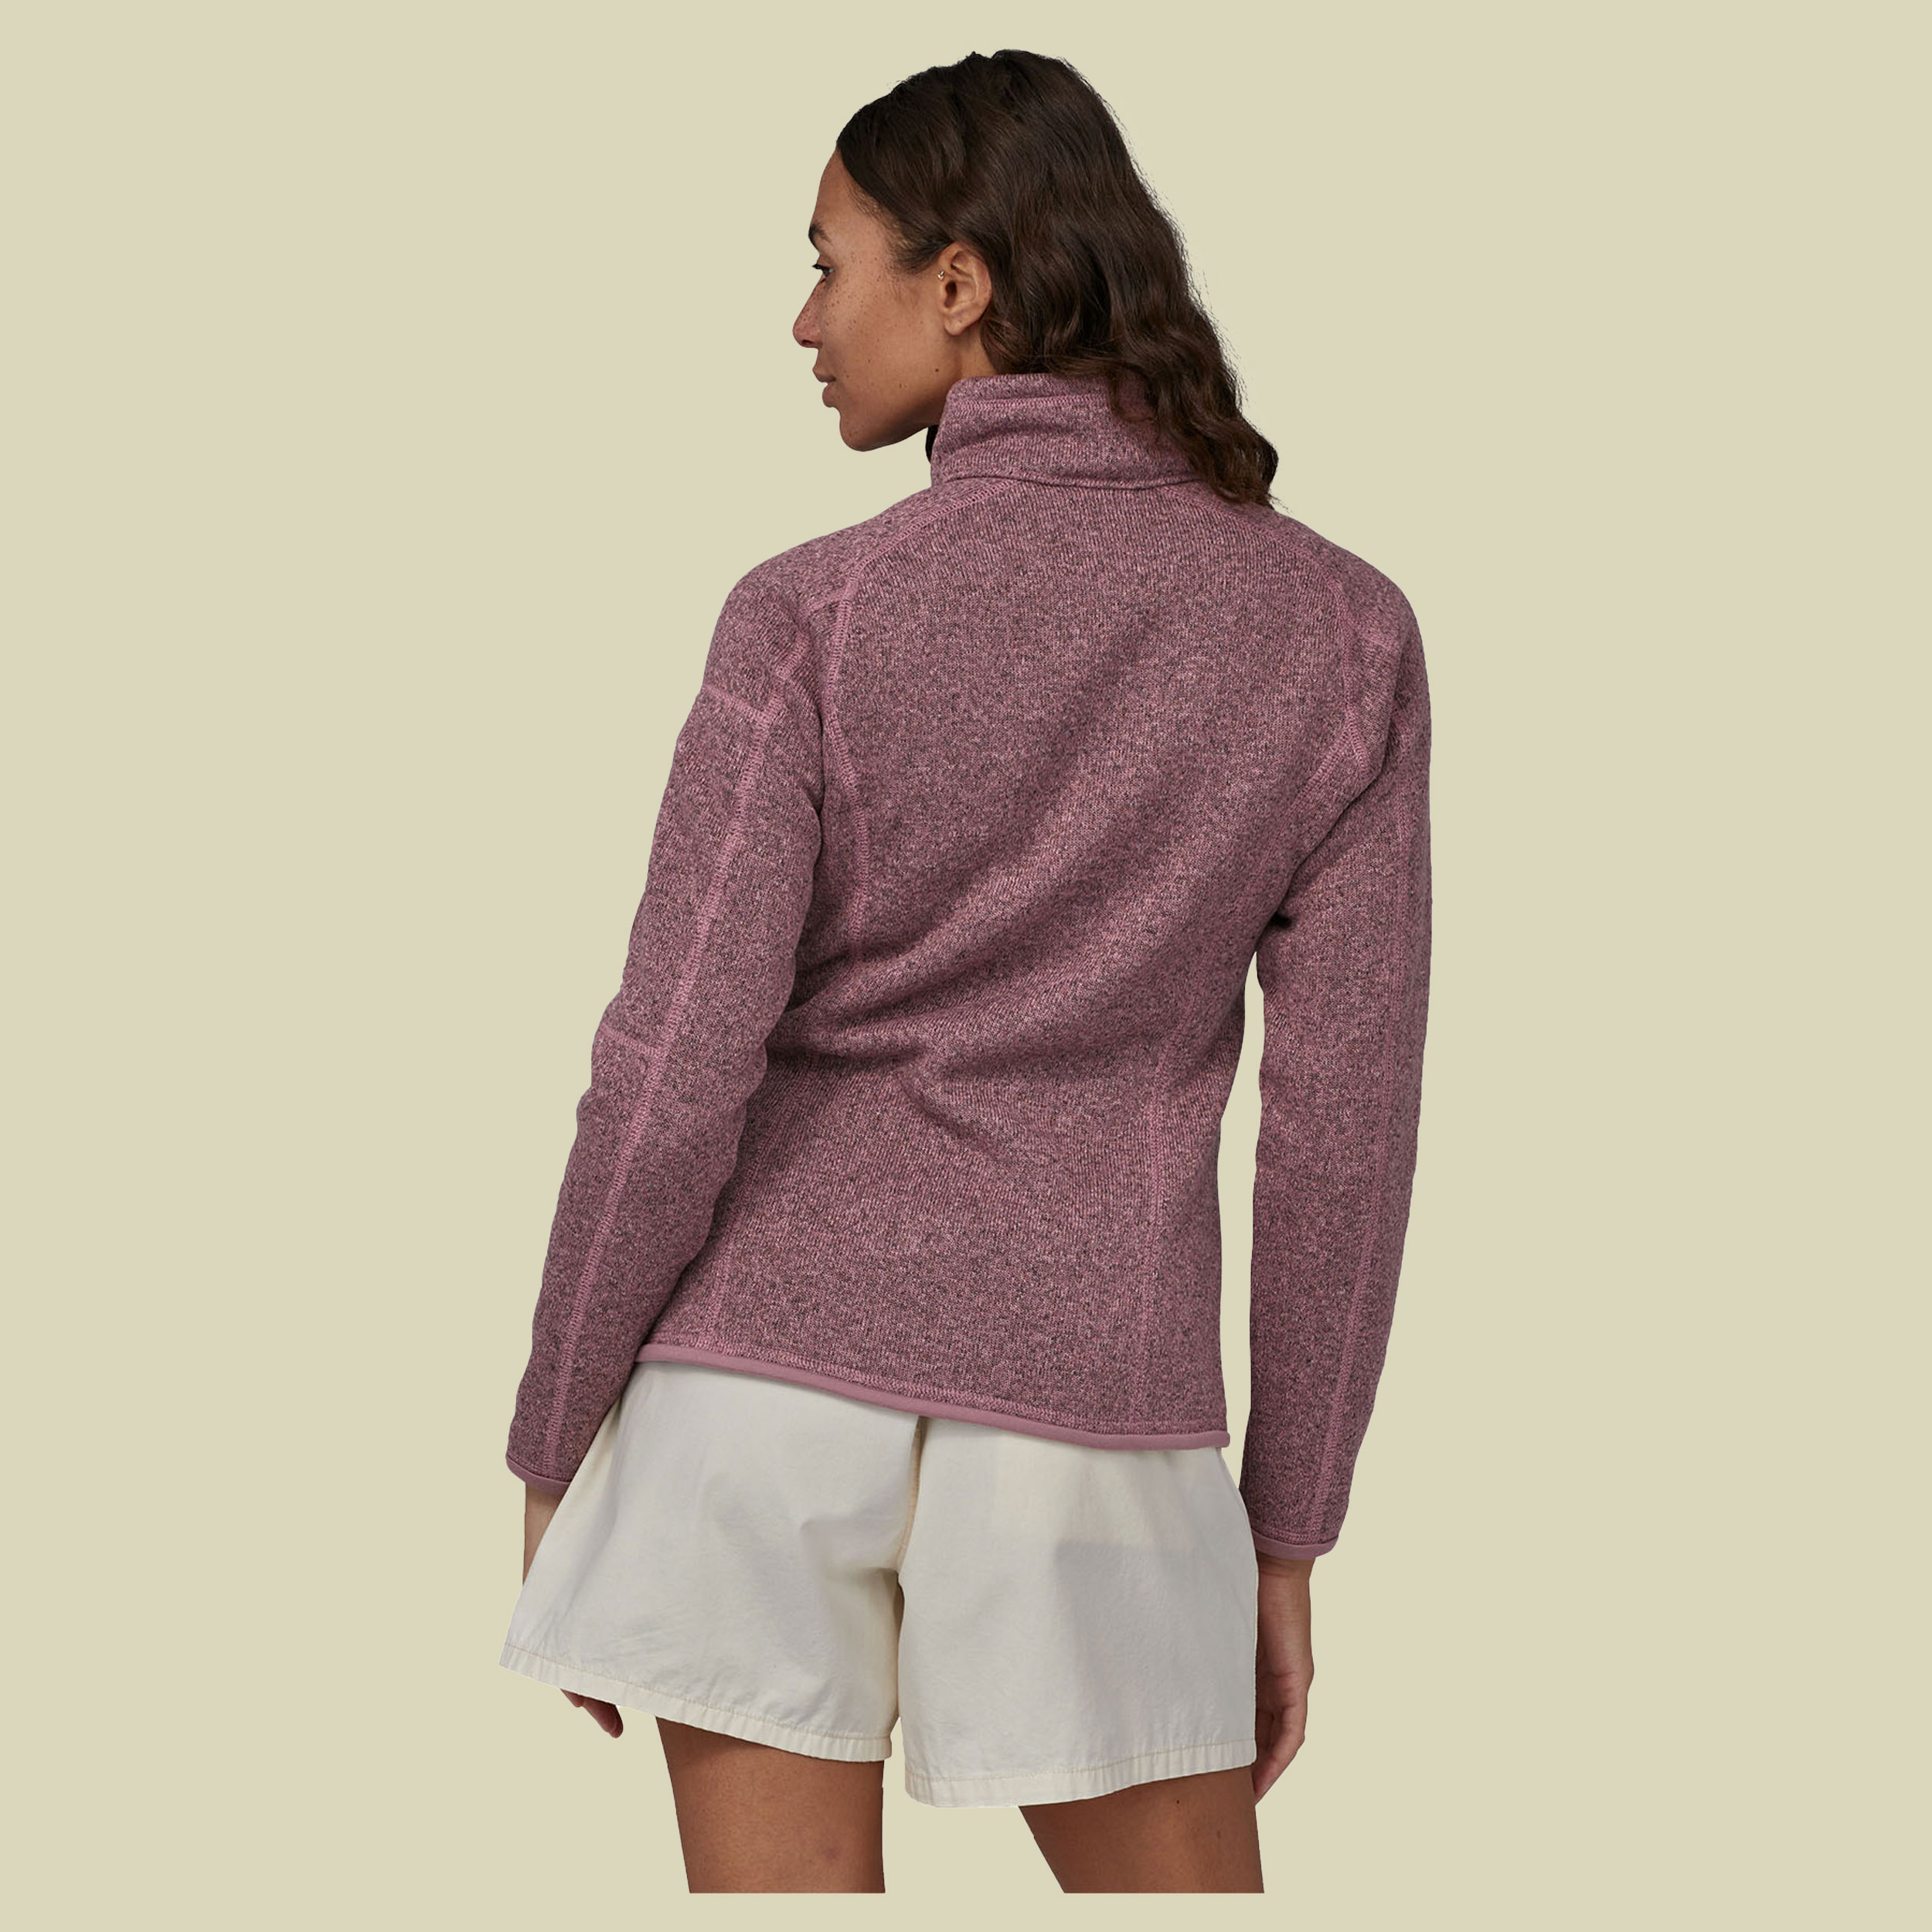 Better Sweater Jacket Women Größe S Farbe evening mauve